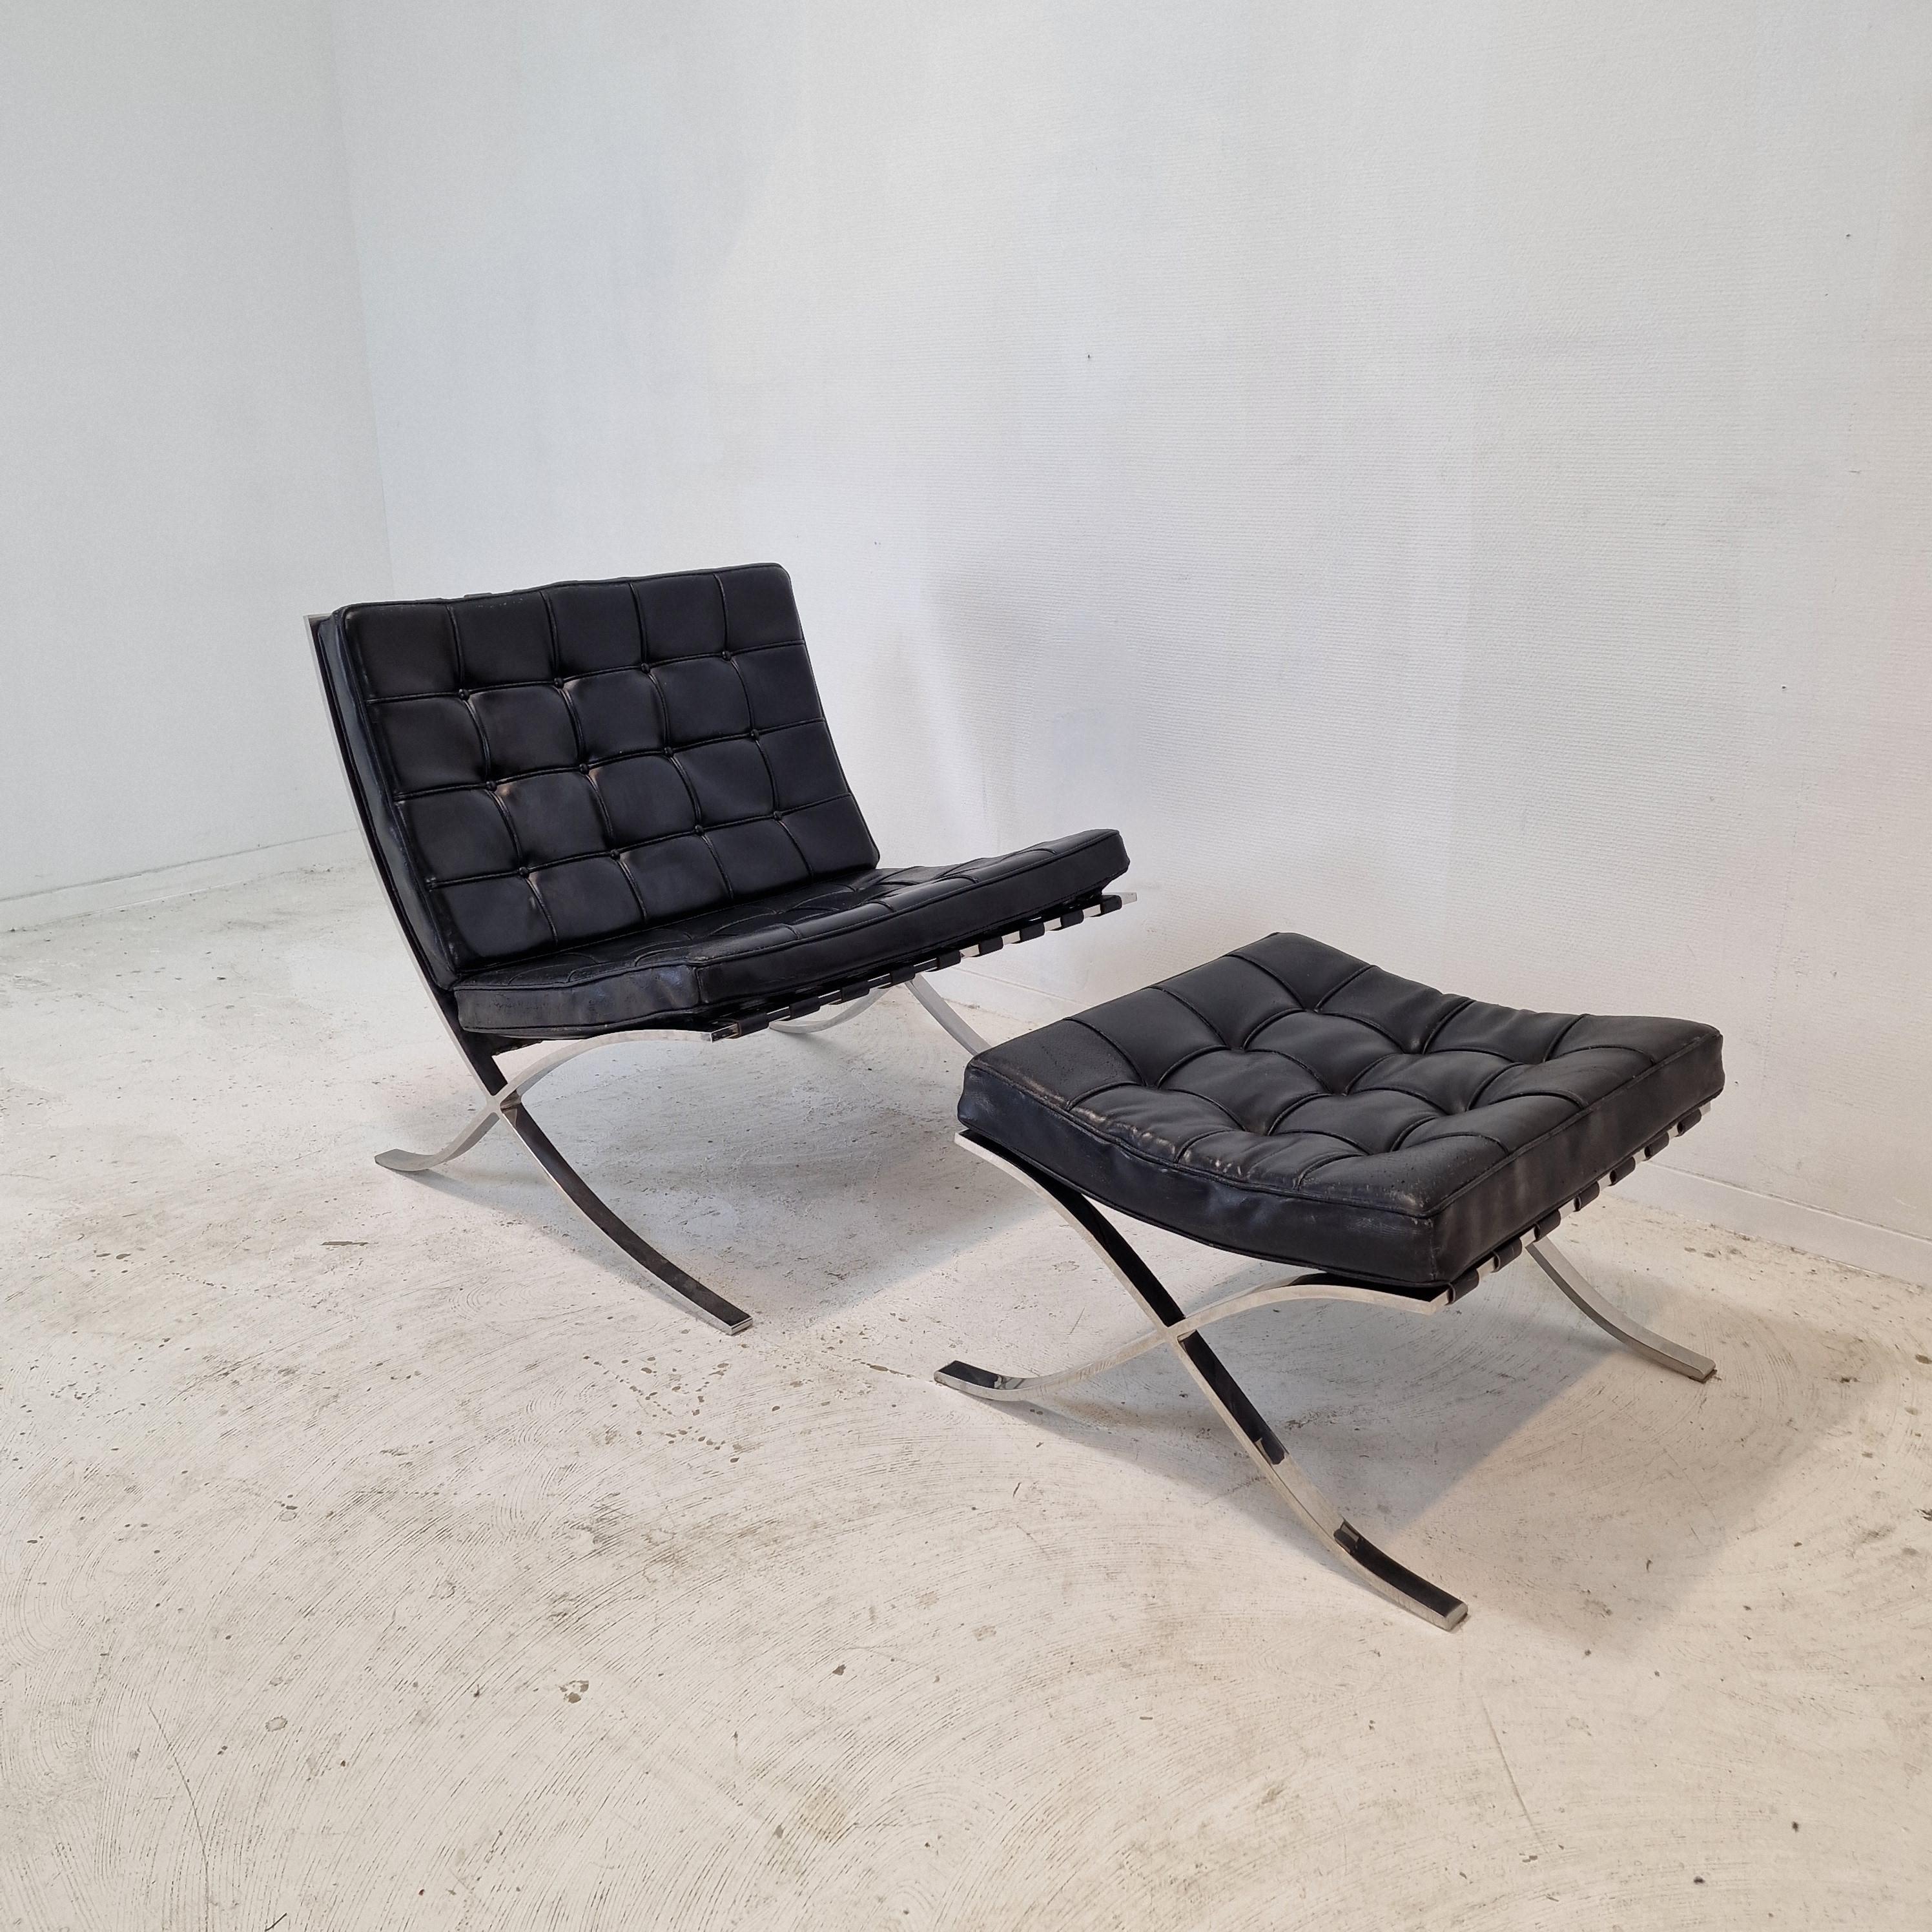 Sehr schöner Barcelona-Stuhl mit Ottomane von Mies van der Rohe, hergestellt in den 70er Jahren von Knoll.

Hergestellt aus schwarzem Leder mit einem sehr soliden polierten Edelstahlrahmen.

Die schwarze Lederpolsterung ist in gebrauchtem Zustand